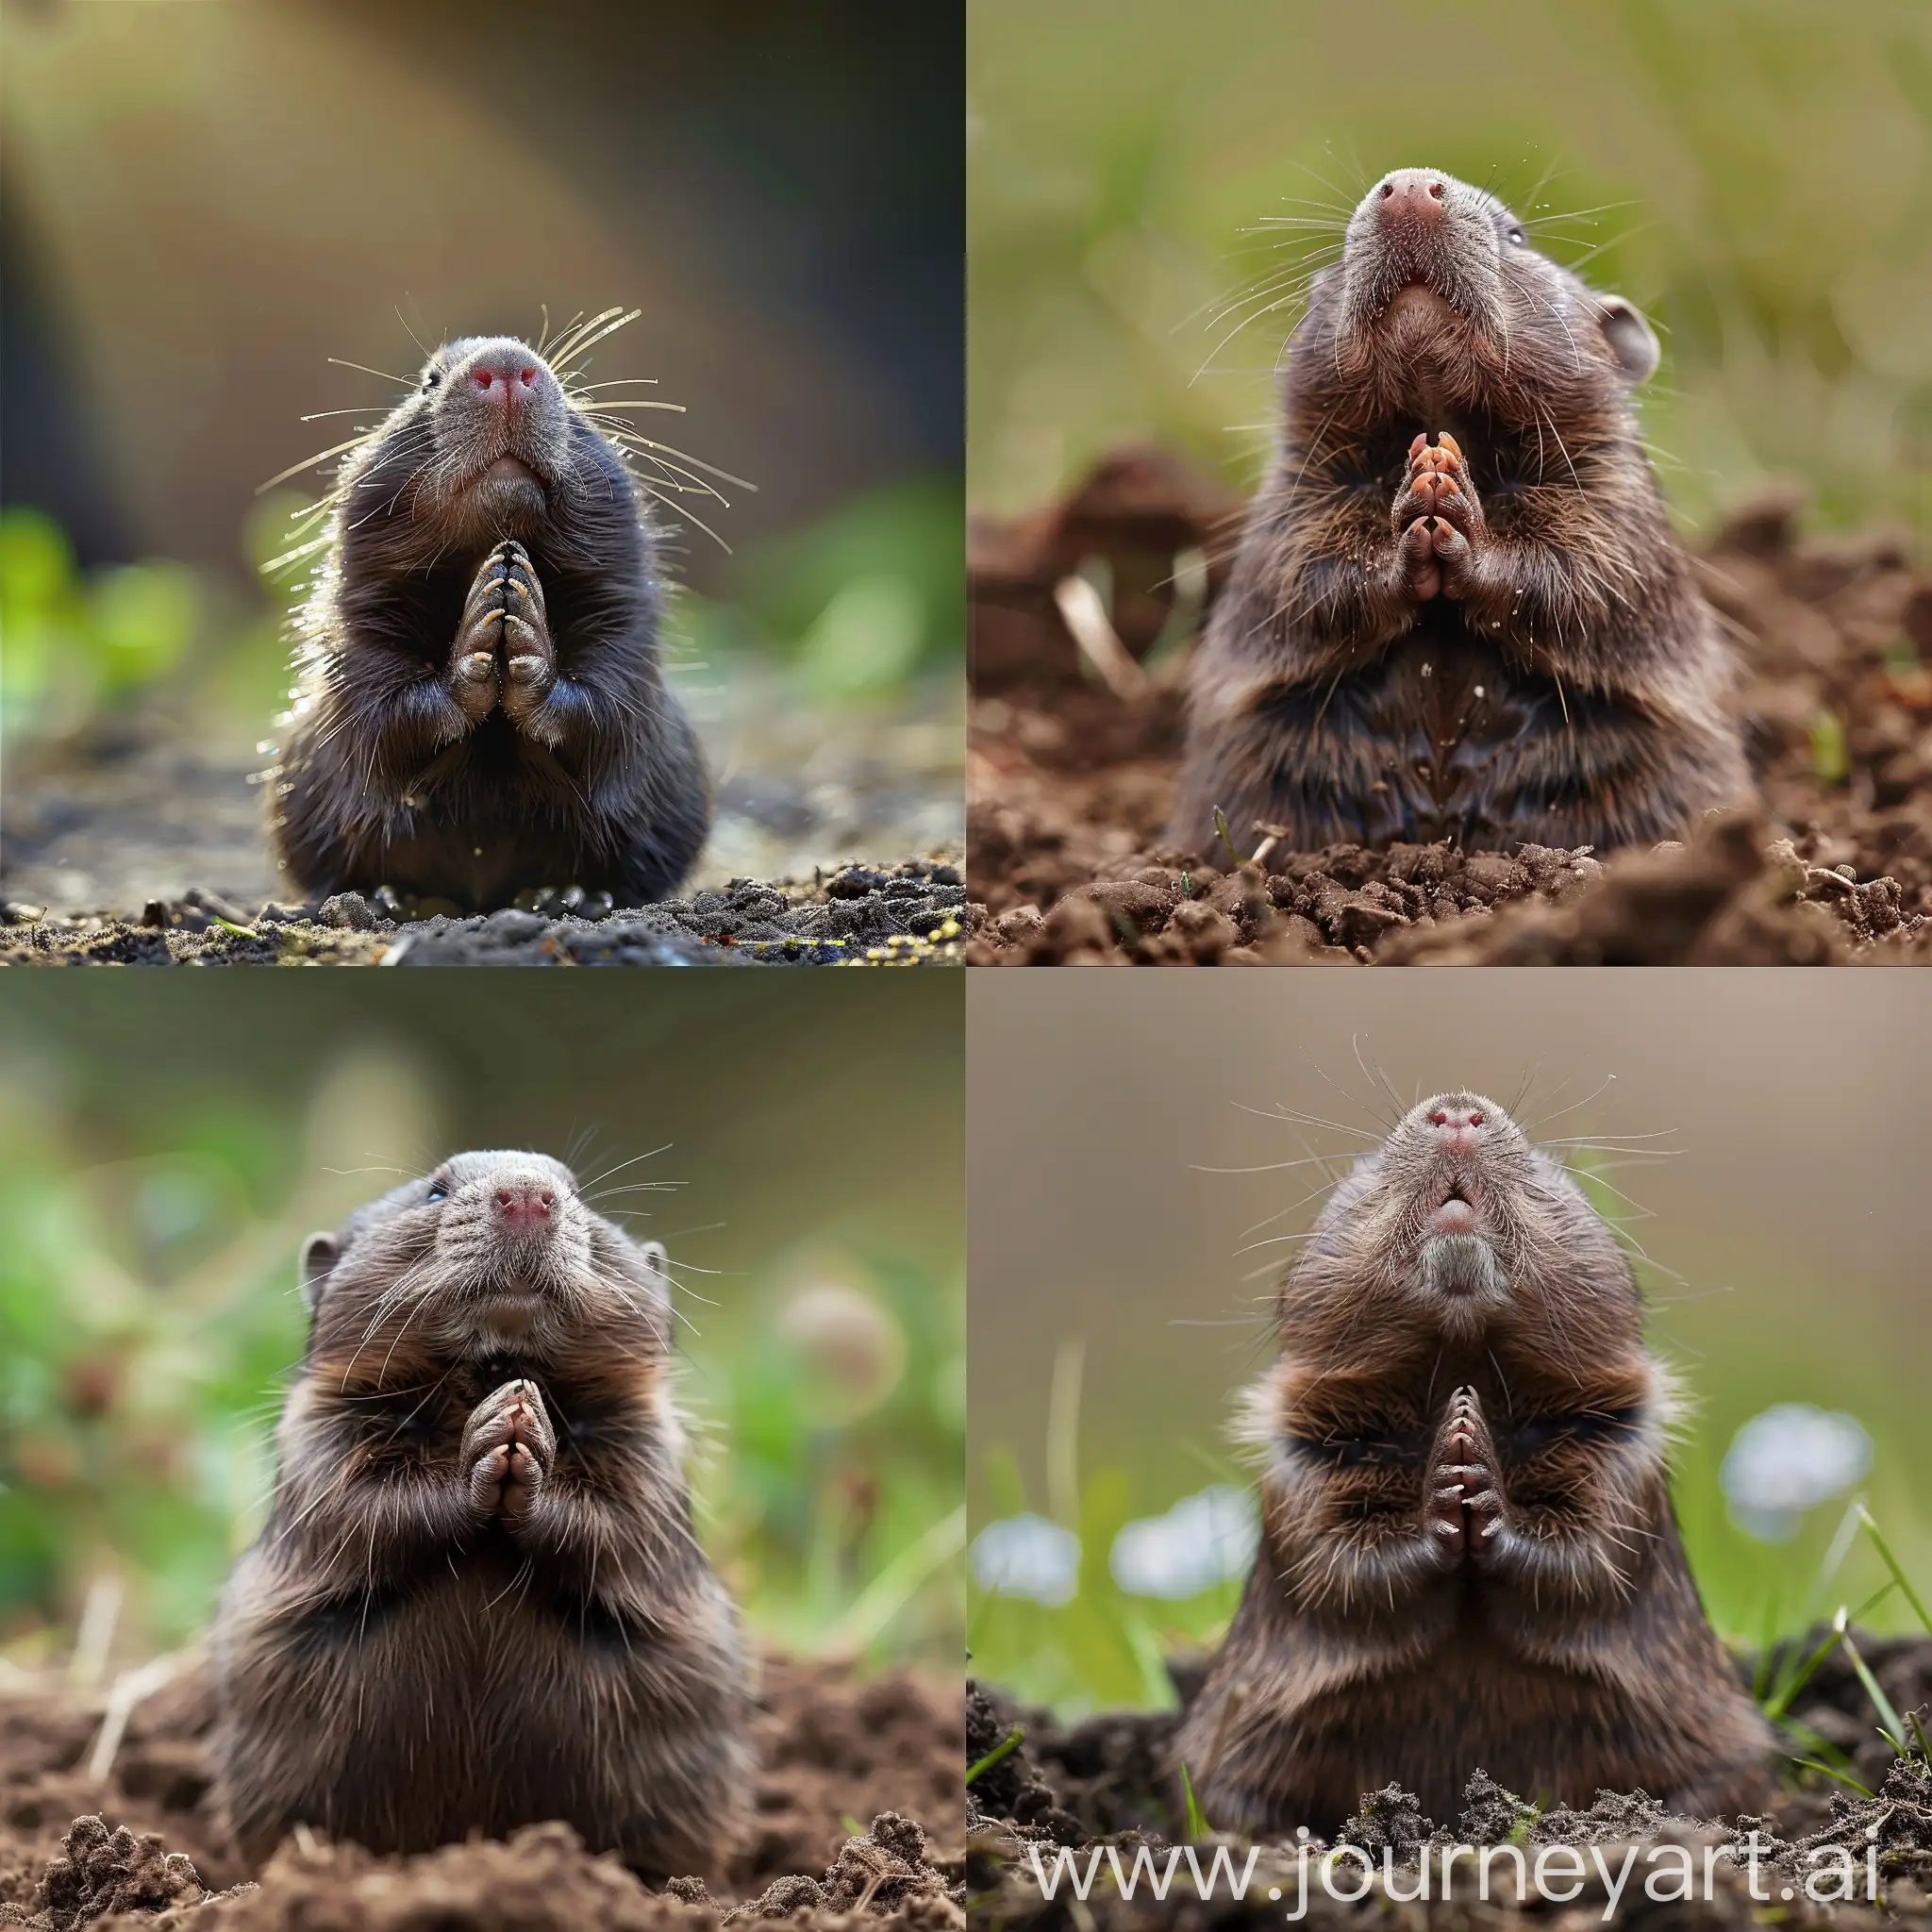 moles praying